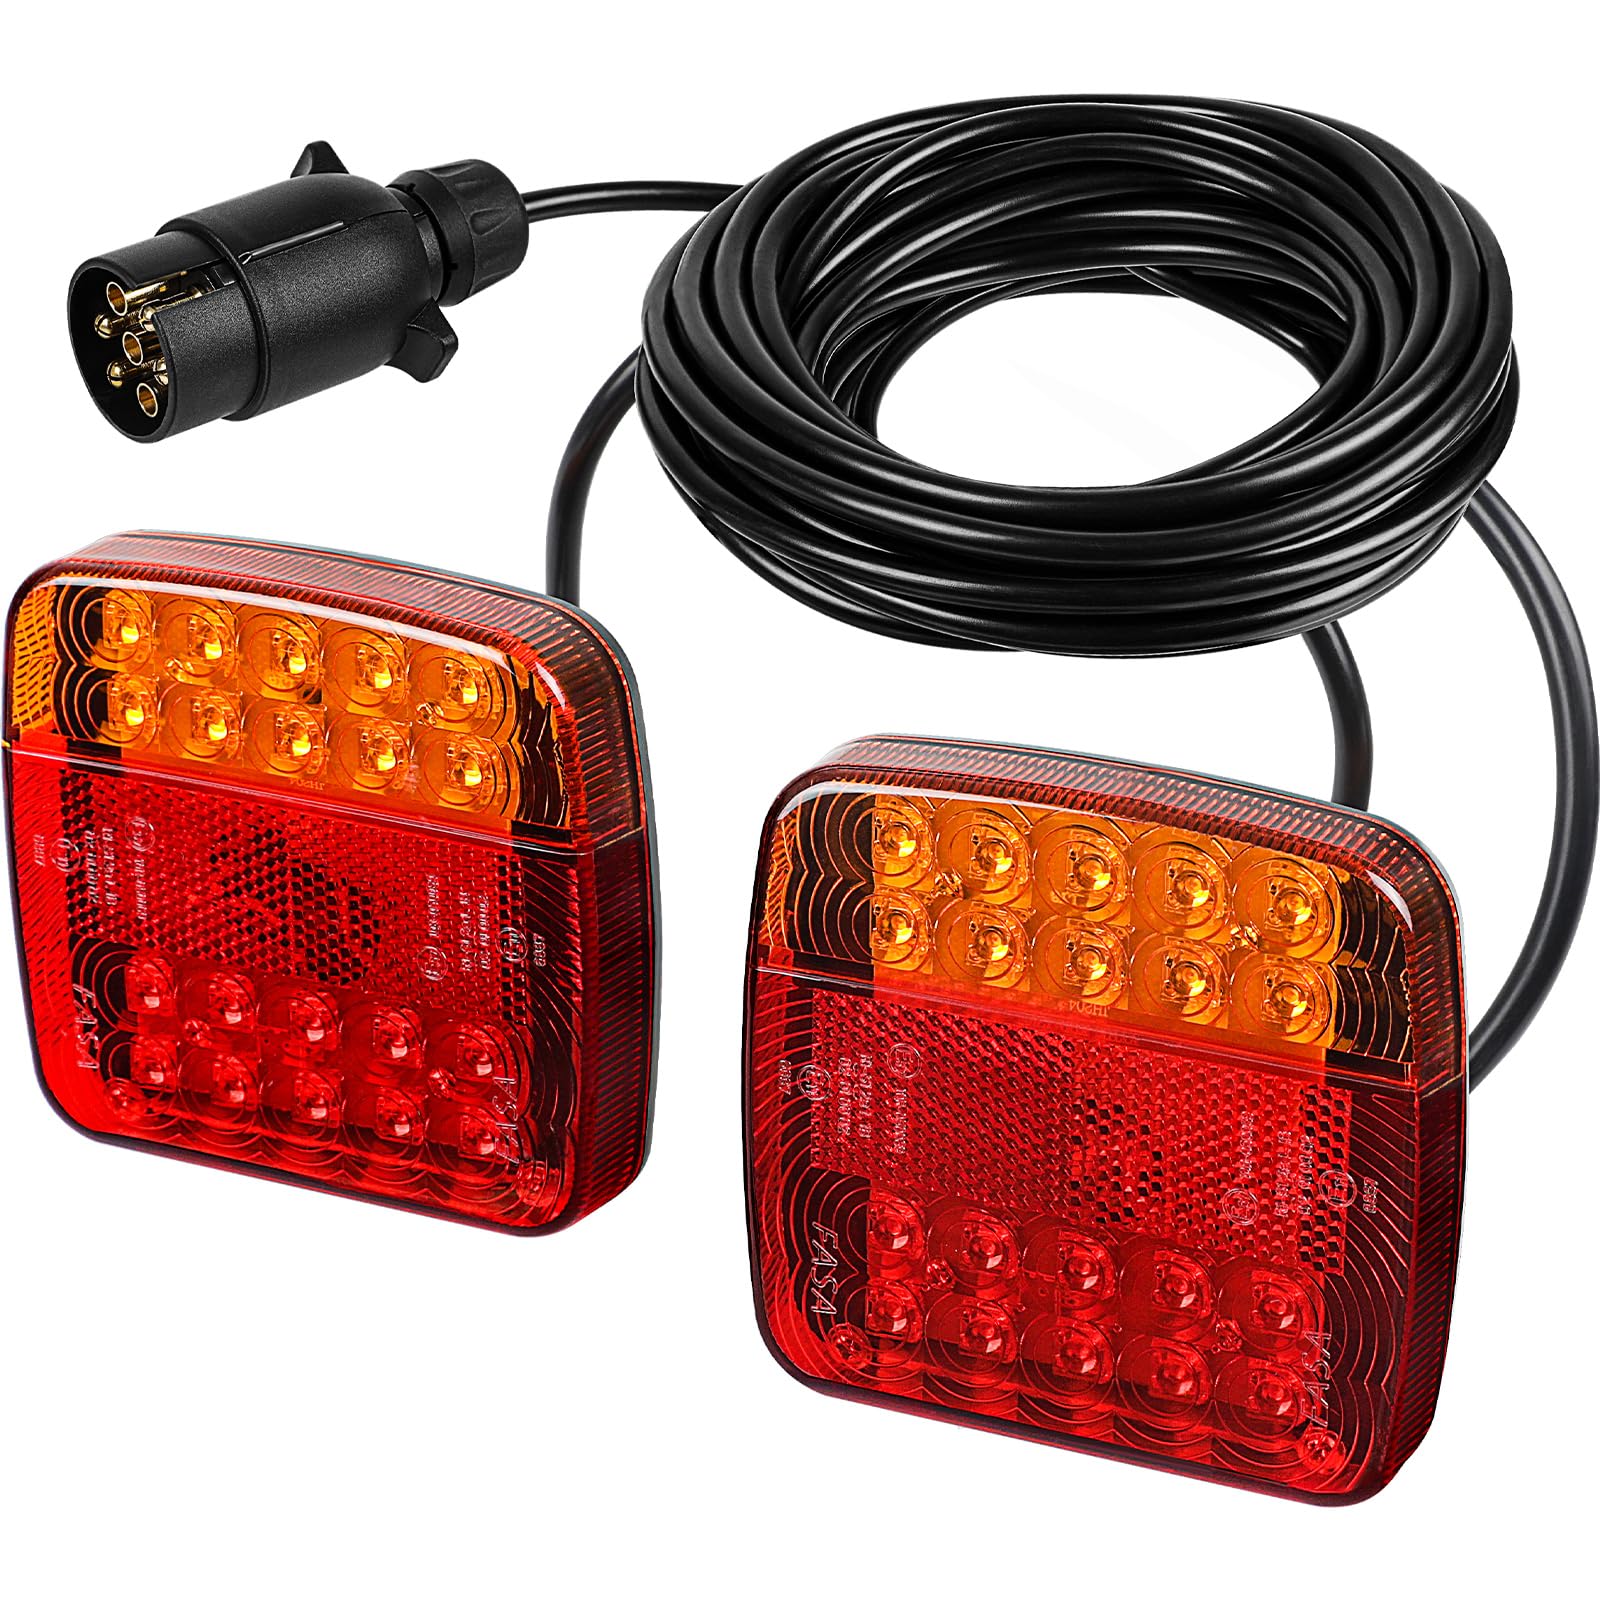 Yuanjoy 7-polig LED Rücklichter für Anhänger mit 7.5 m Kabel Vorverkabelt 12V LKW Rückleuchten mit E-Prüfzeichen, Wasserdicht Rücklicht Magnetisch Heckleuchten Plug-and-Play von Yuanjoy